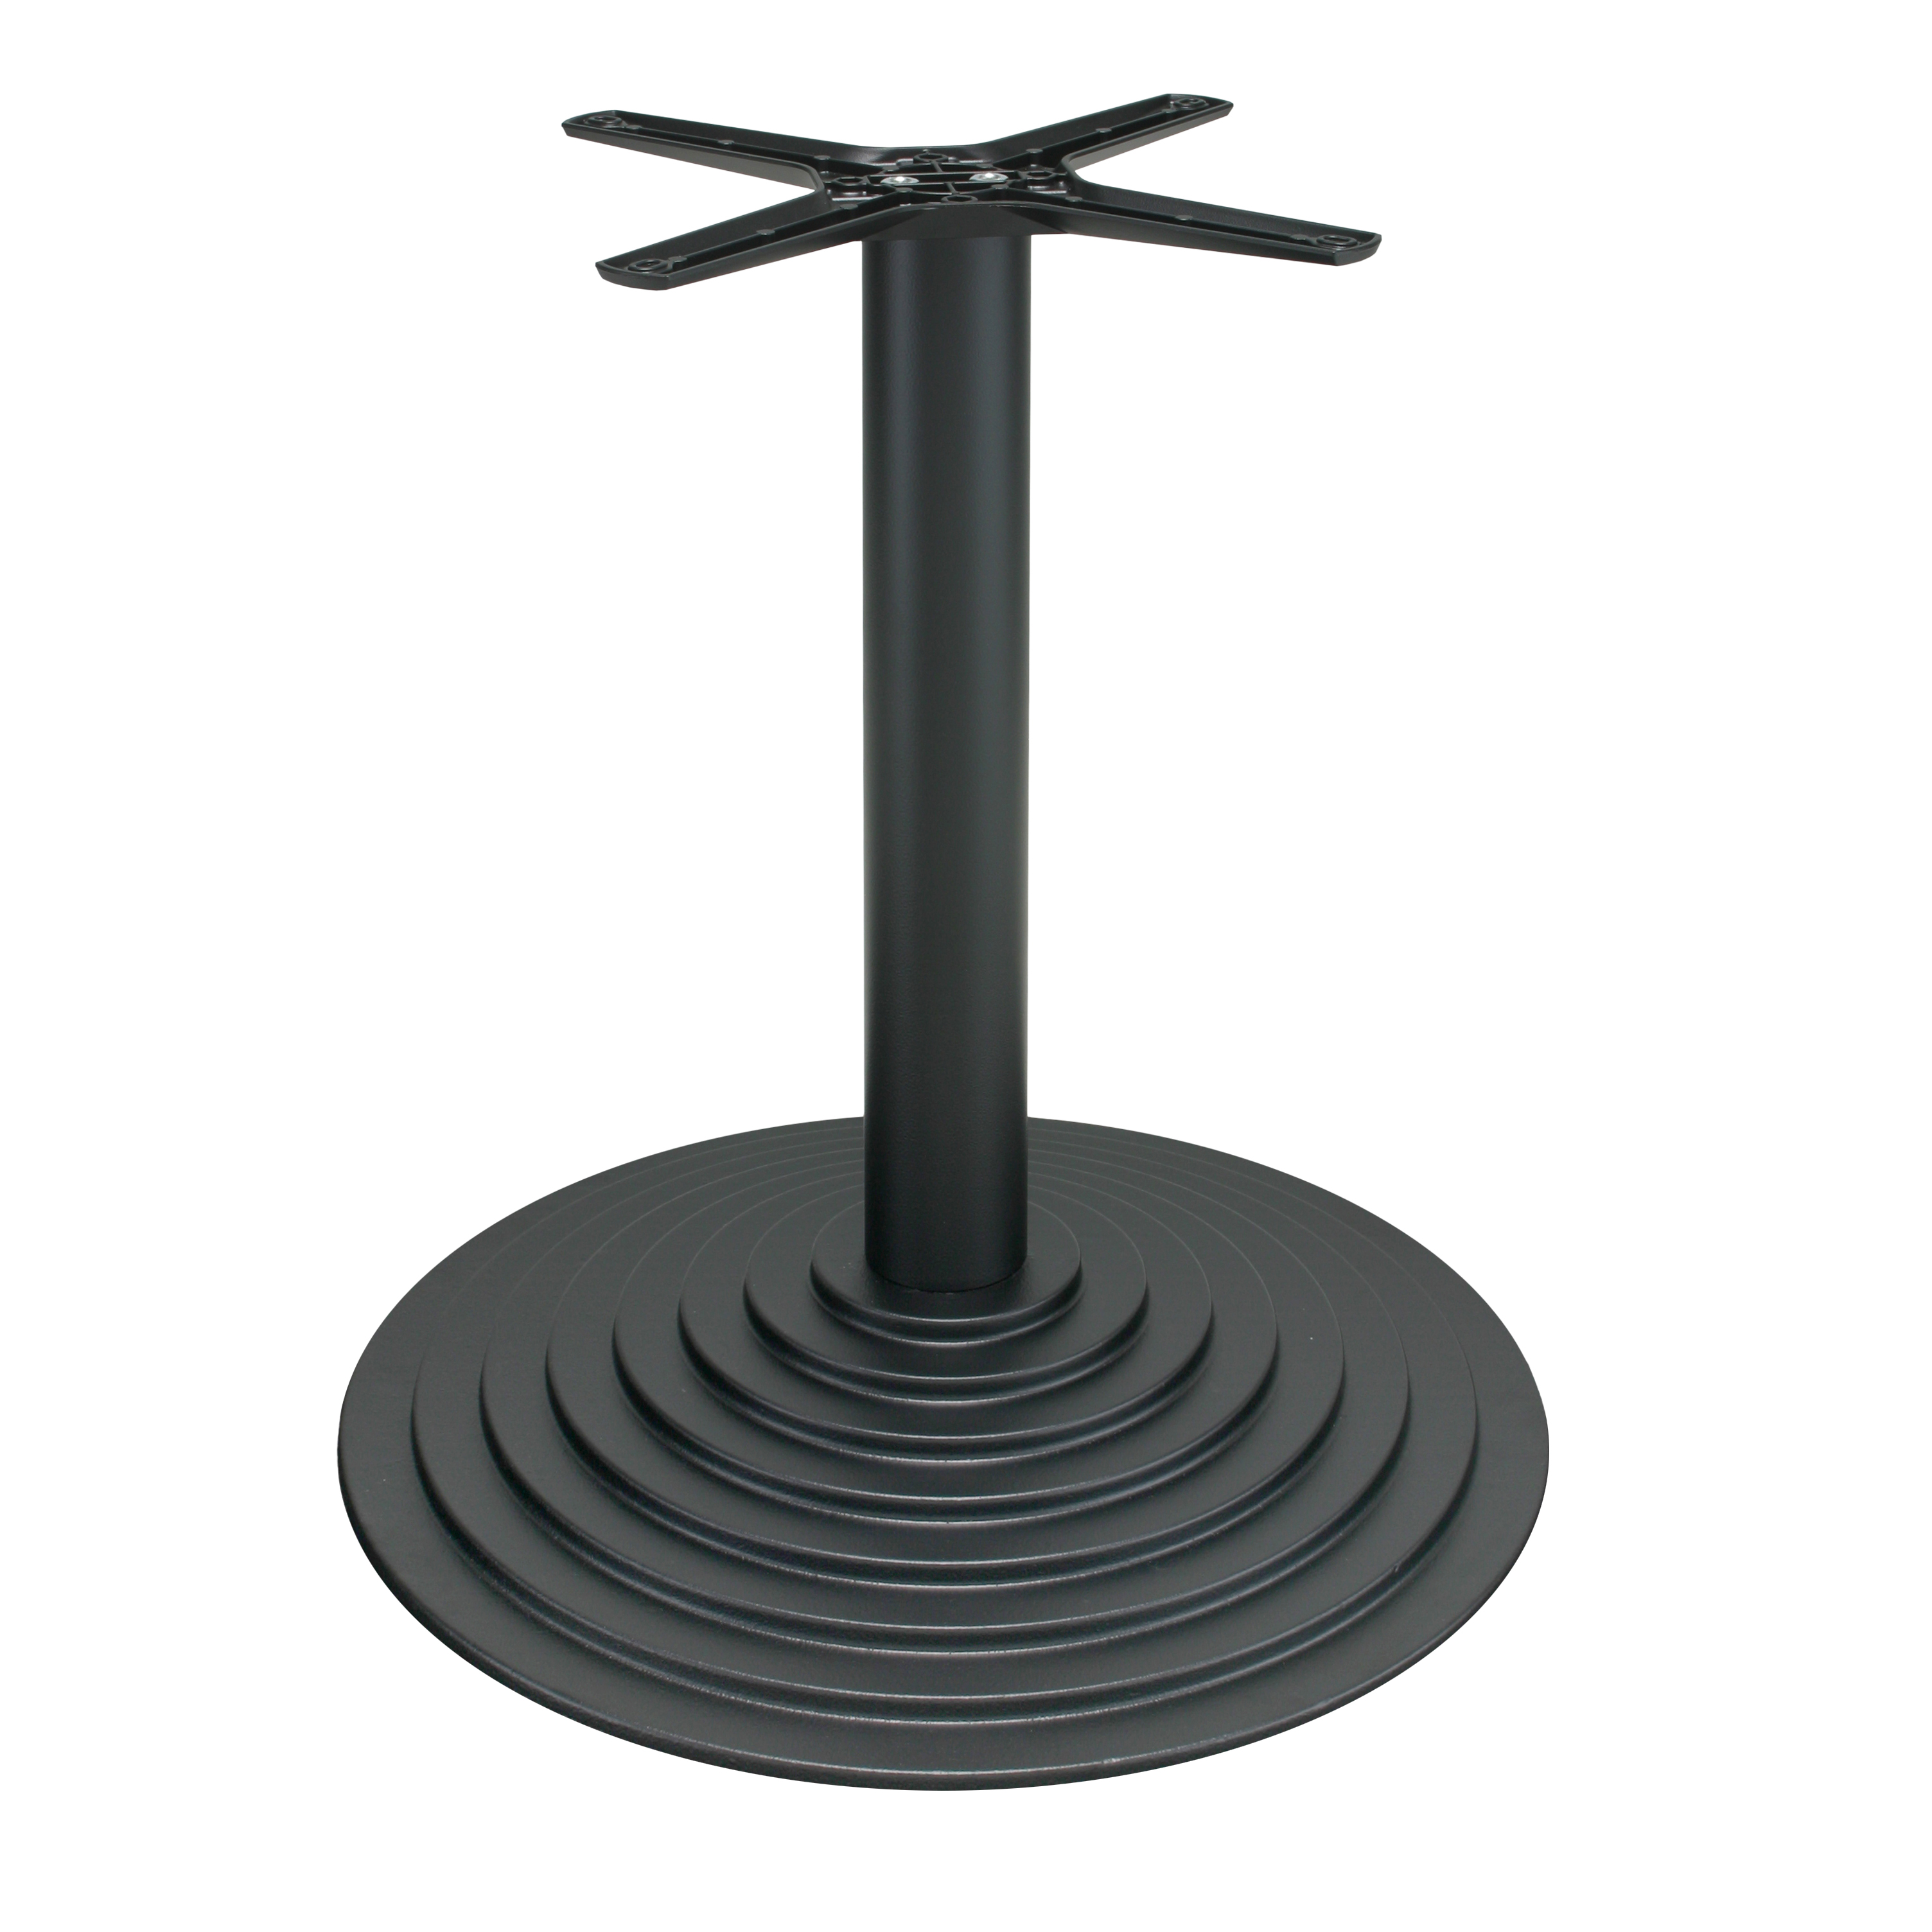 Tischbein P600, Gusseisen, pulverbeschichtet - schwarz, runde Bodenplatte